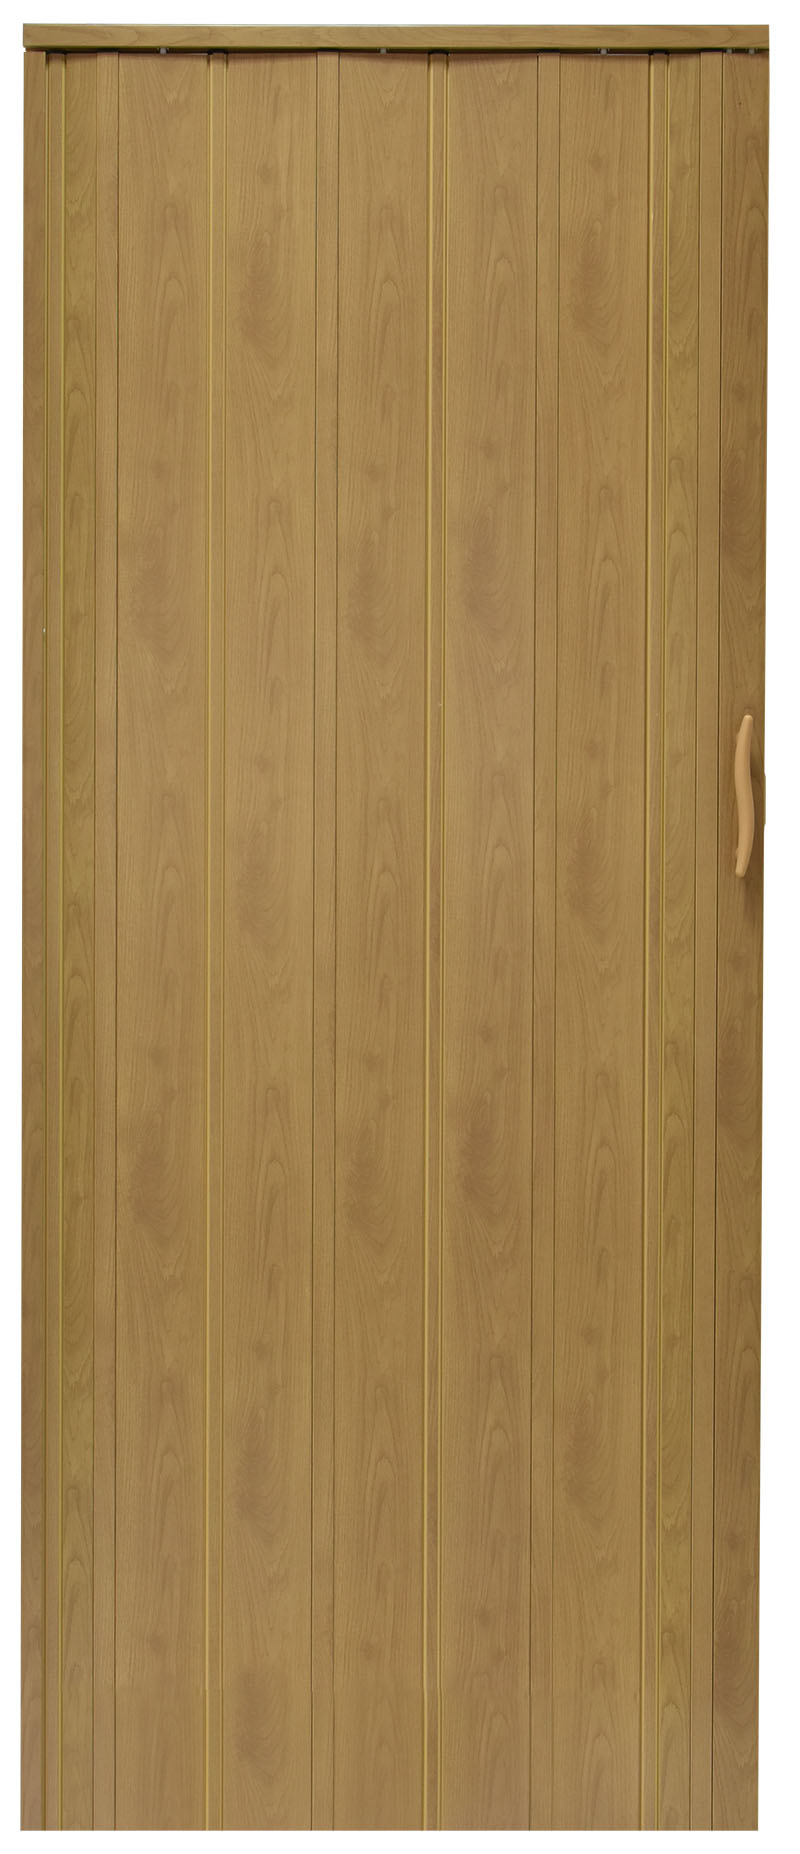 Drzwi harmonijkowe 008P - 80 cm - 46G jasny dąb mat G